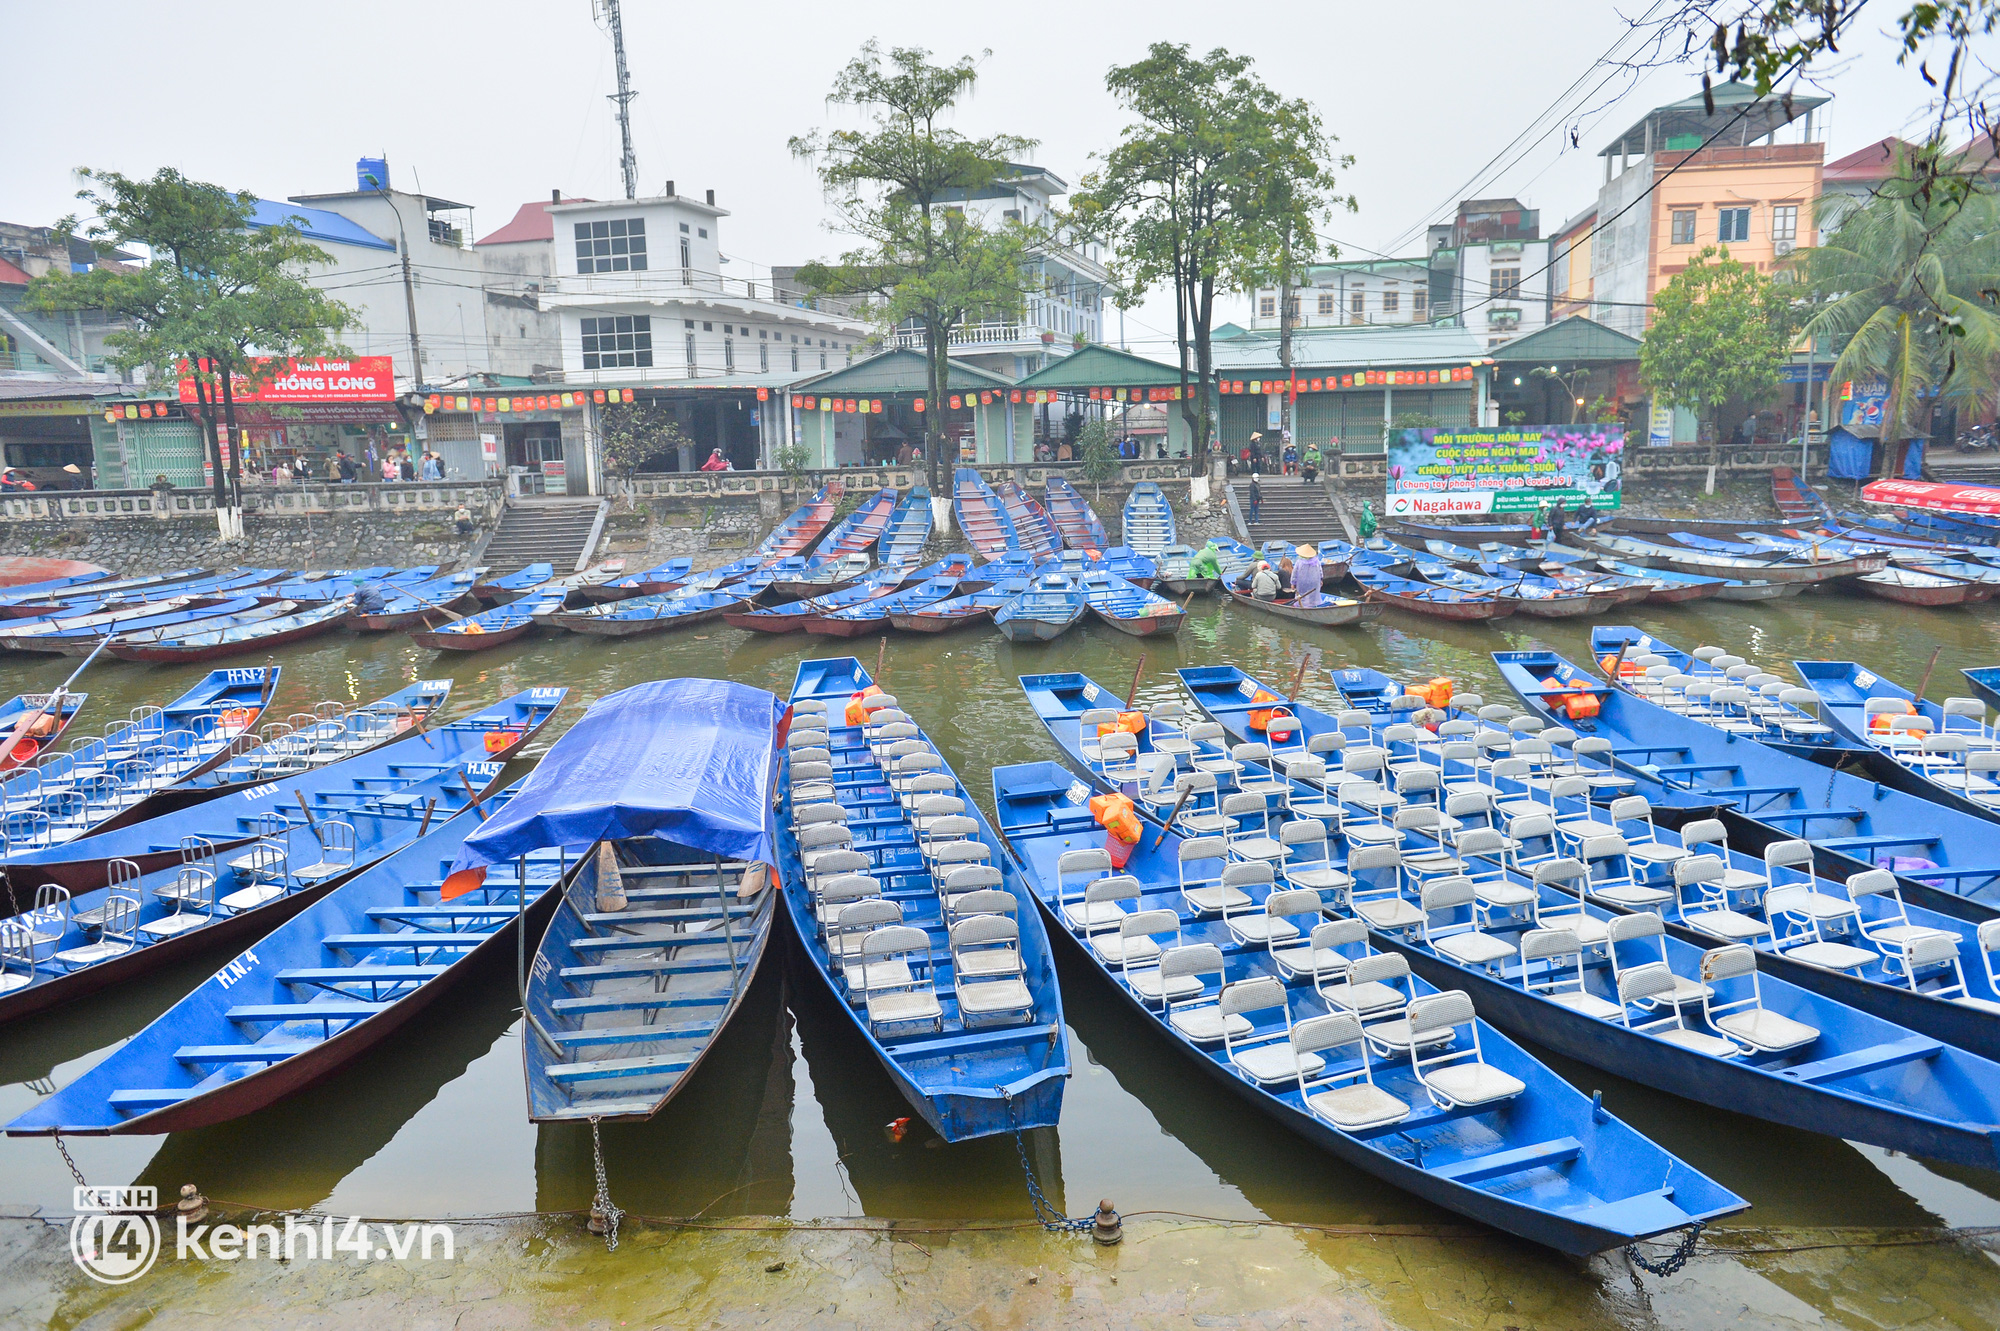 Ảnh: Người dân mặc áo mưa co rúm trên thuyền, trẻ em mệt mỏi theo cha mẹ đi lễ chùa Hương trong giá rét - Ảnh 2.